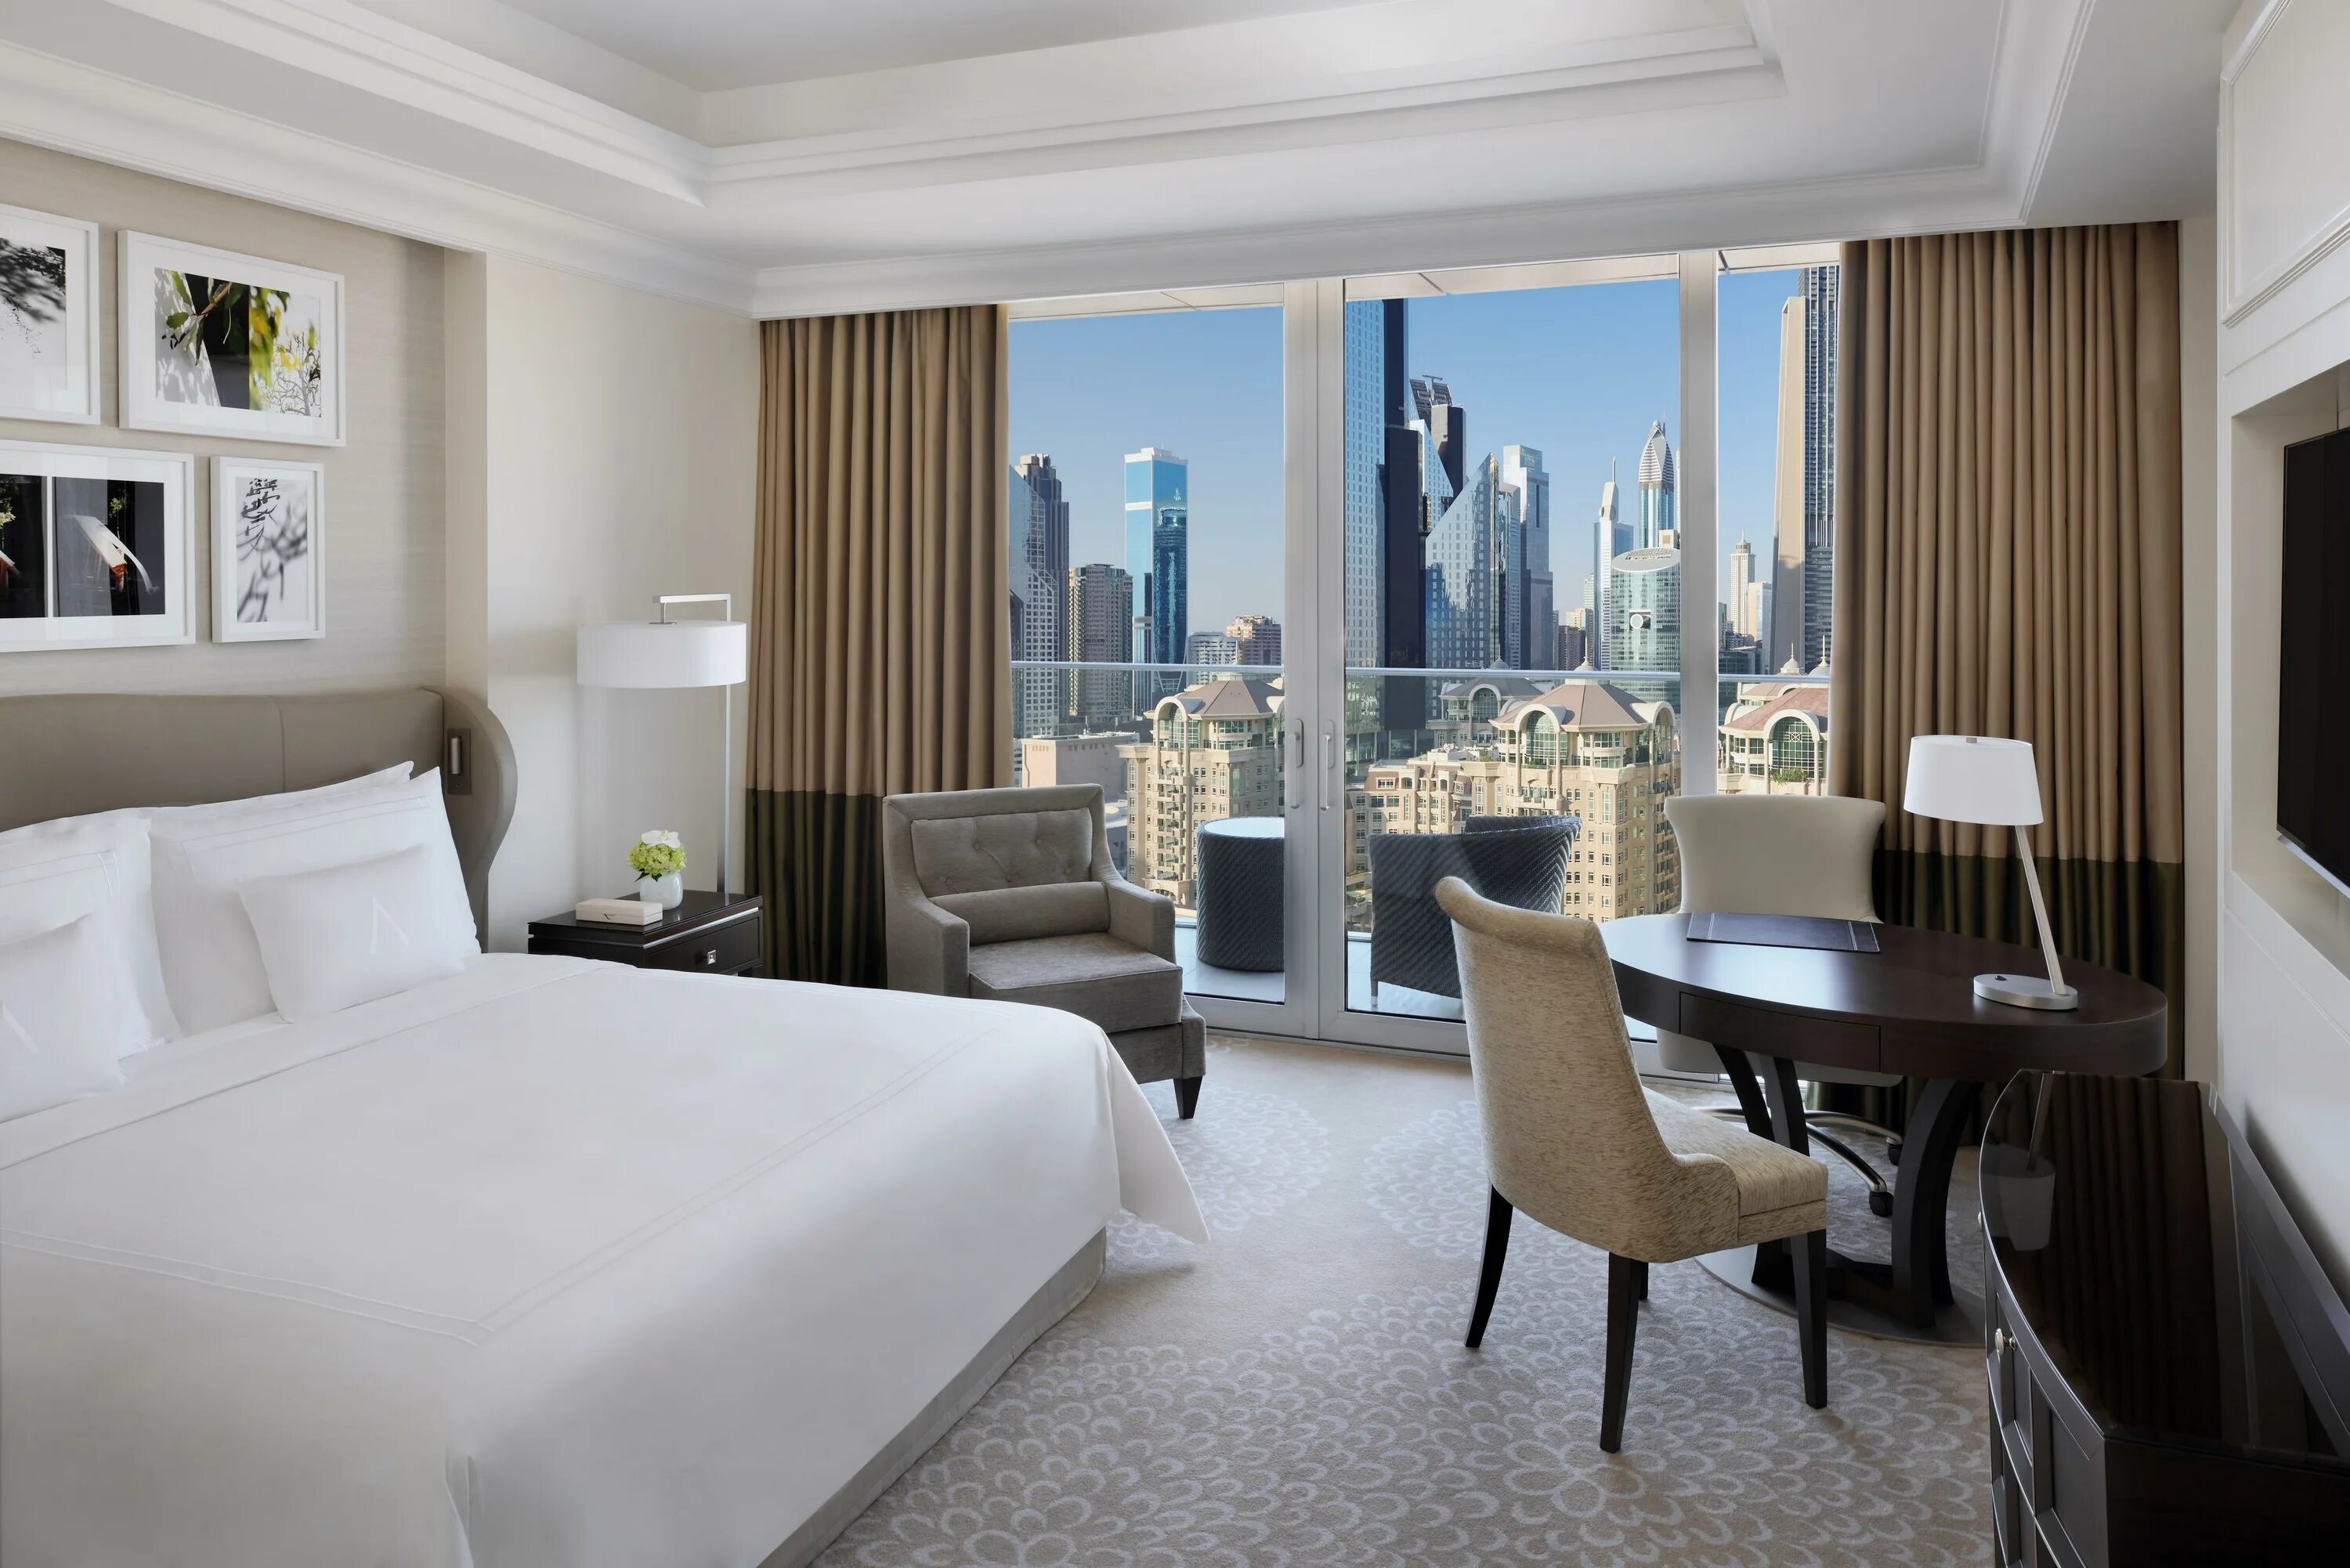 Address Boulevard Dubai. Boulevard Hotel Dubai. Novotel Даунтаун Дубай. Kempinski the Boulevard Dubai. Address отель